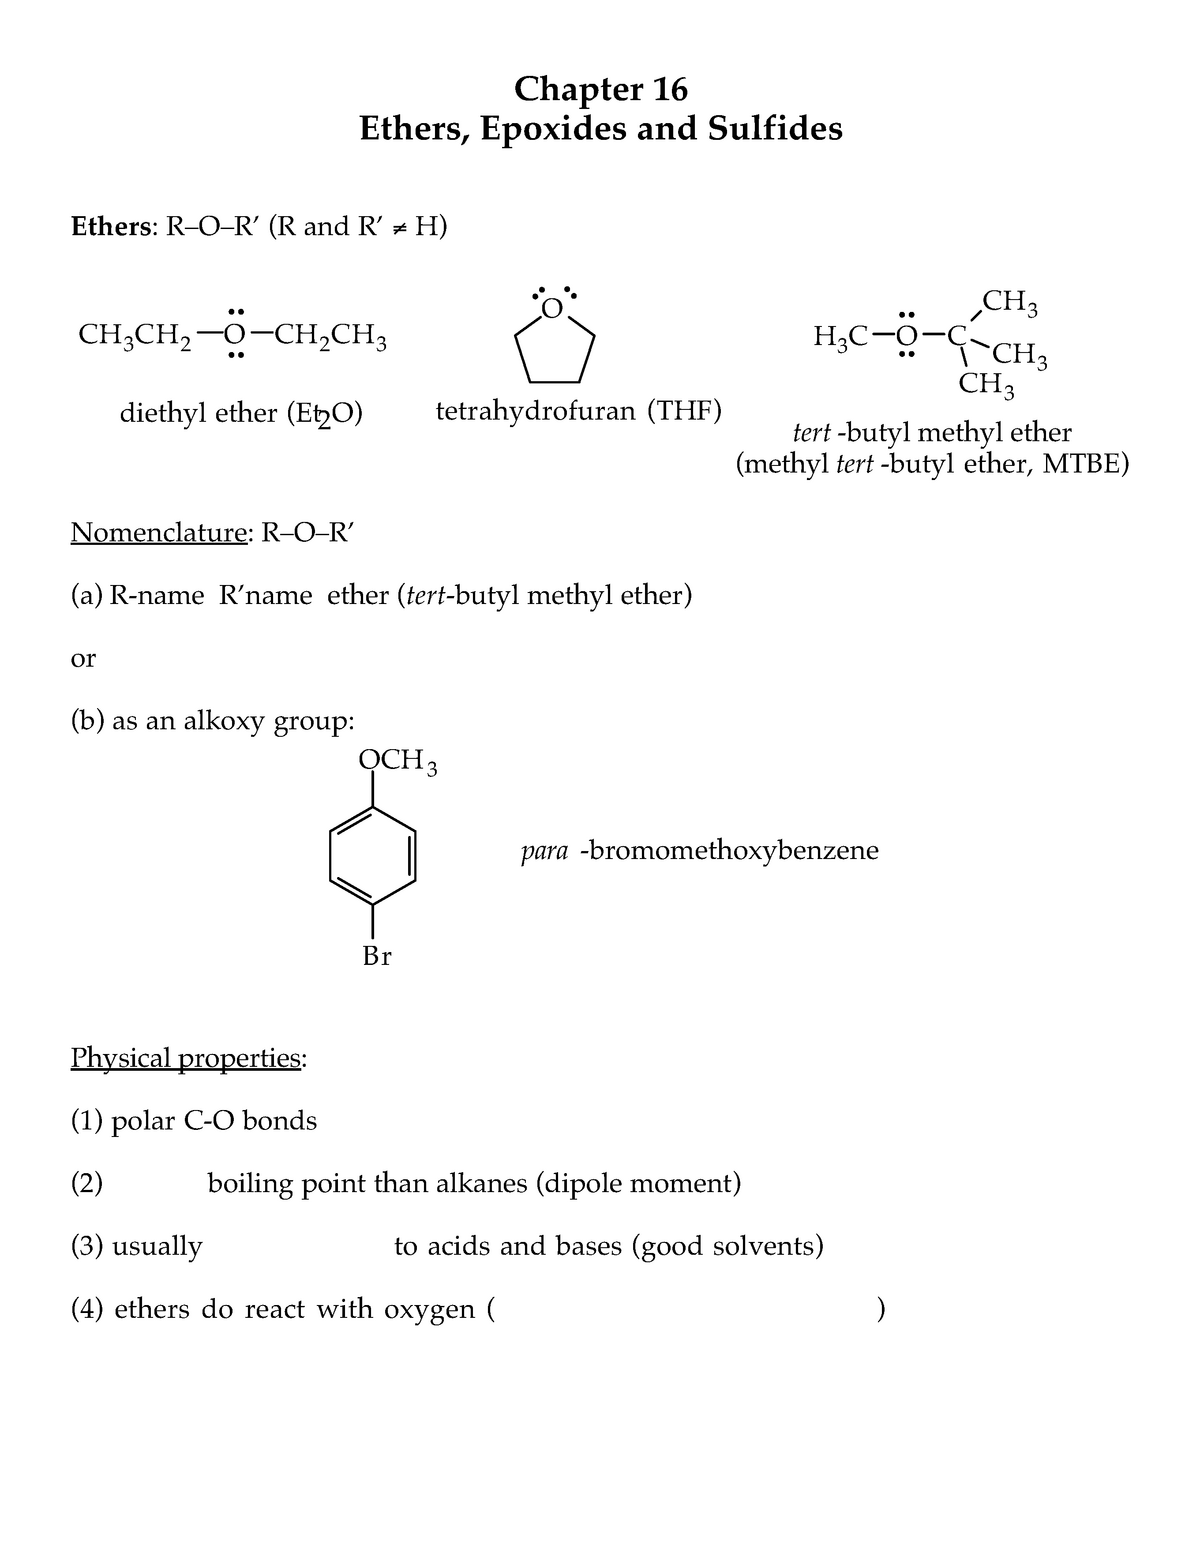 Summary Organic Chemistry Ethers Epoxides And Sulfides Studocu